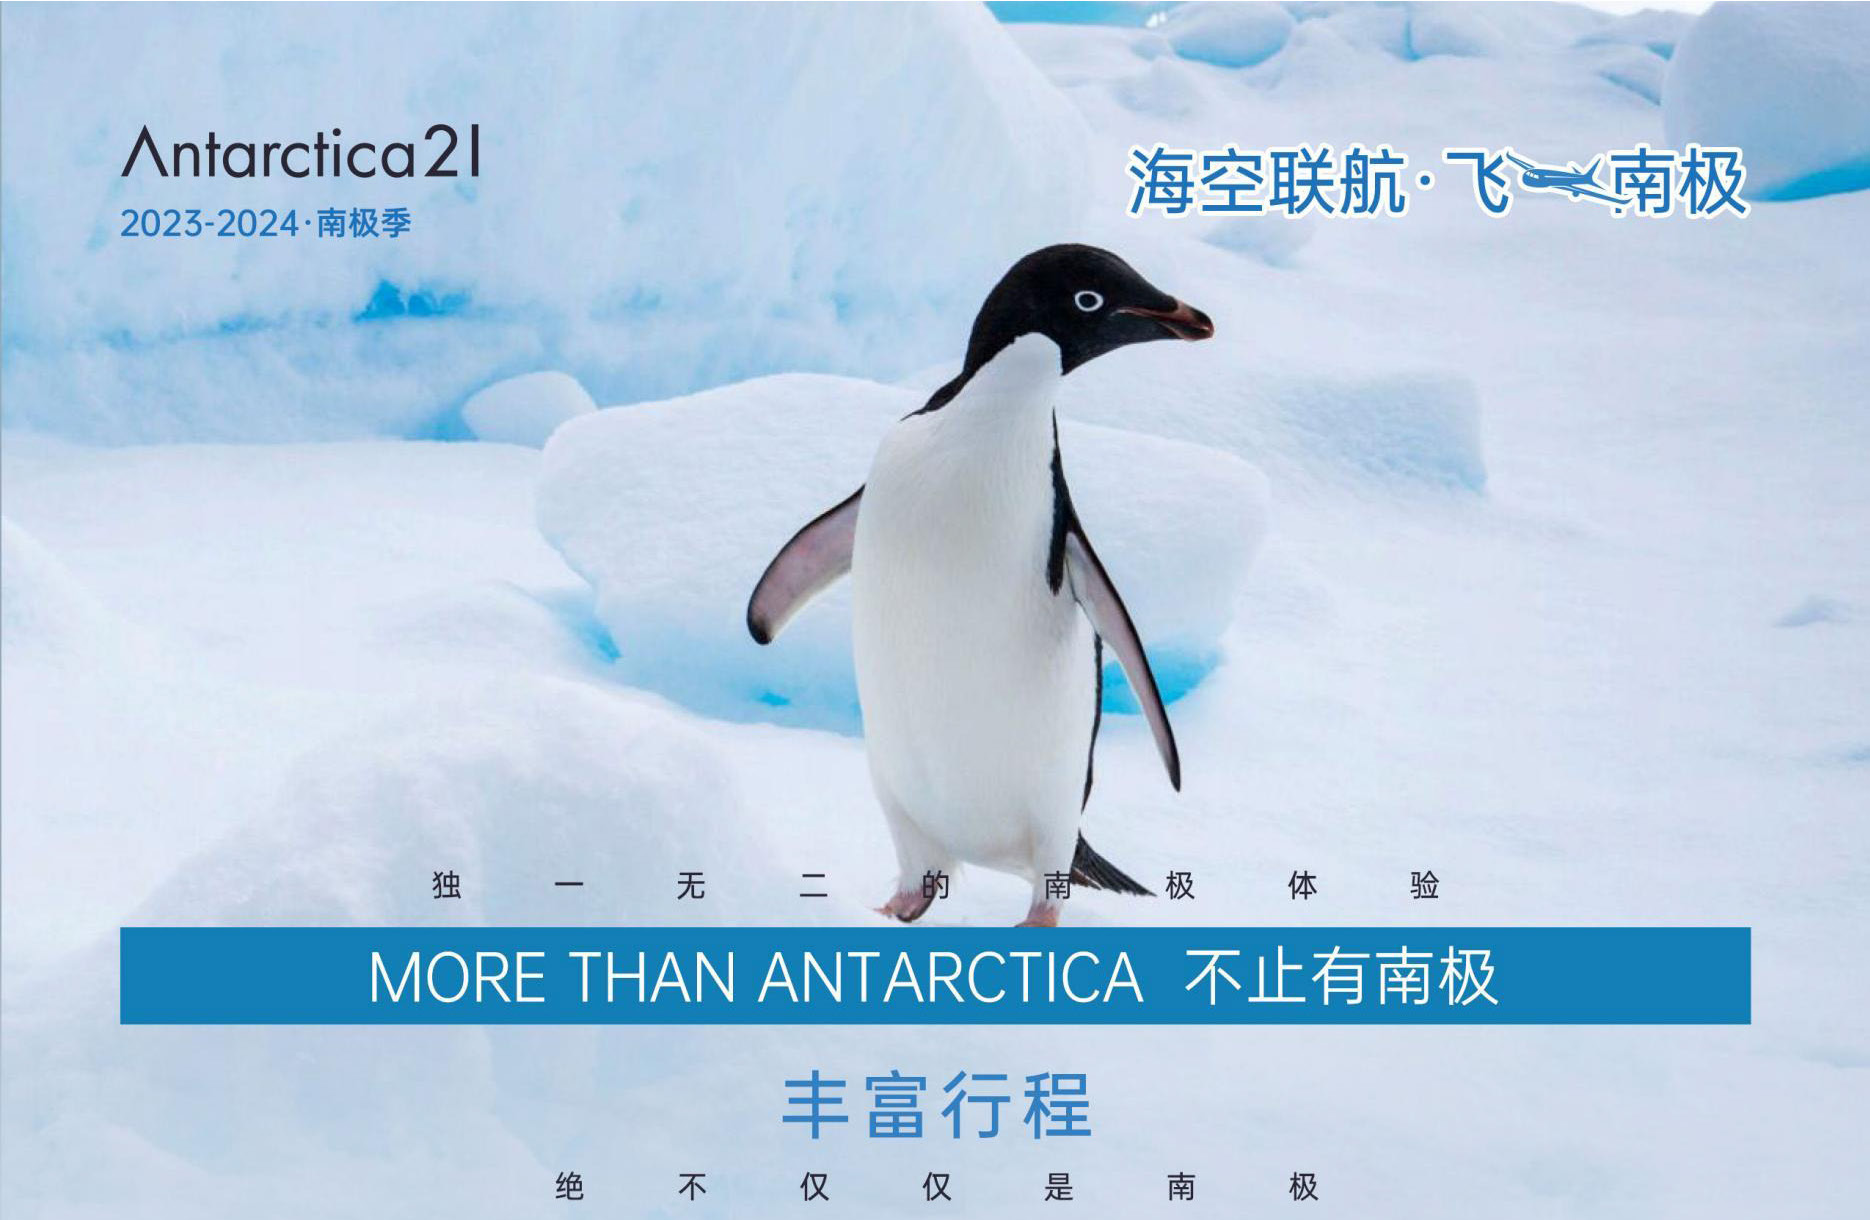 海陆空联航20天奢华南极之旅—2023-2024南极旅拍团